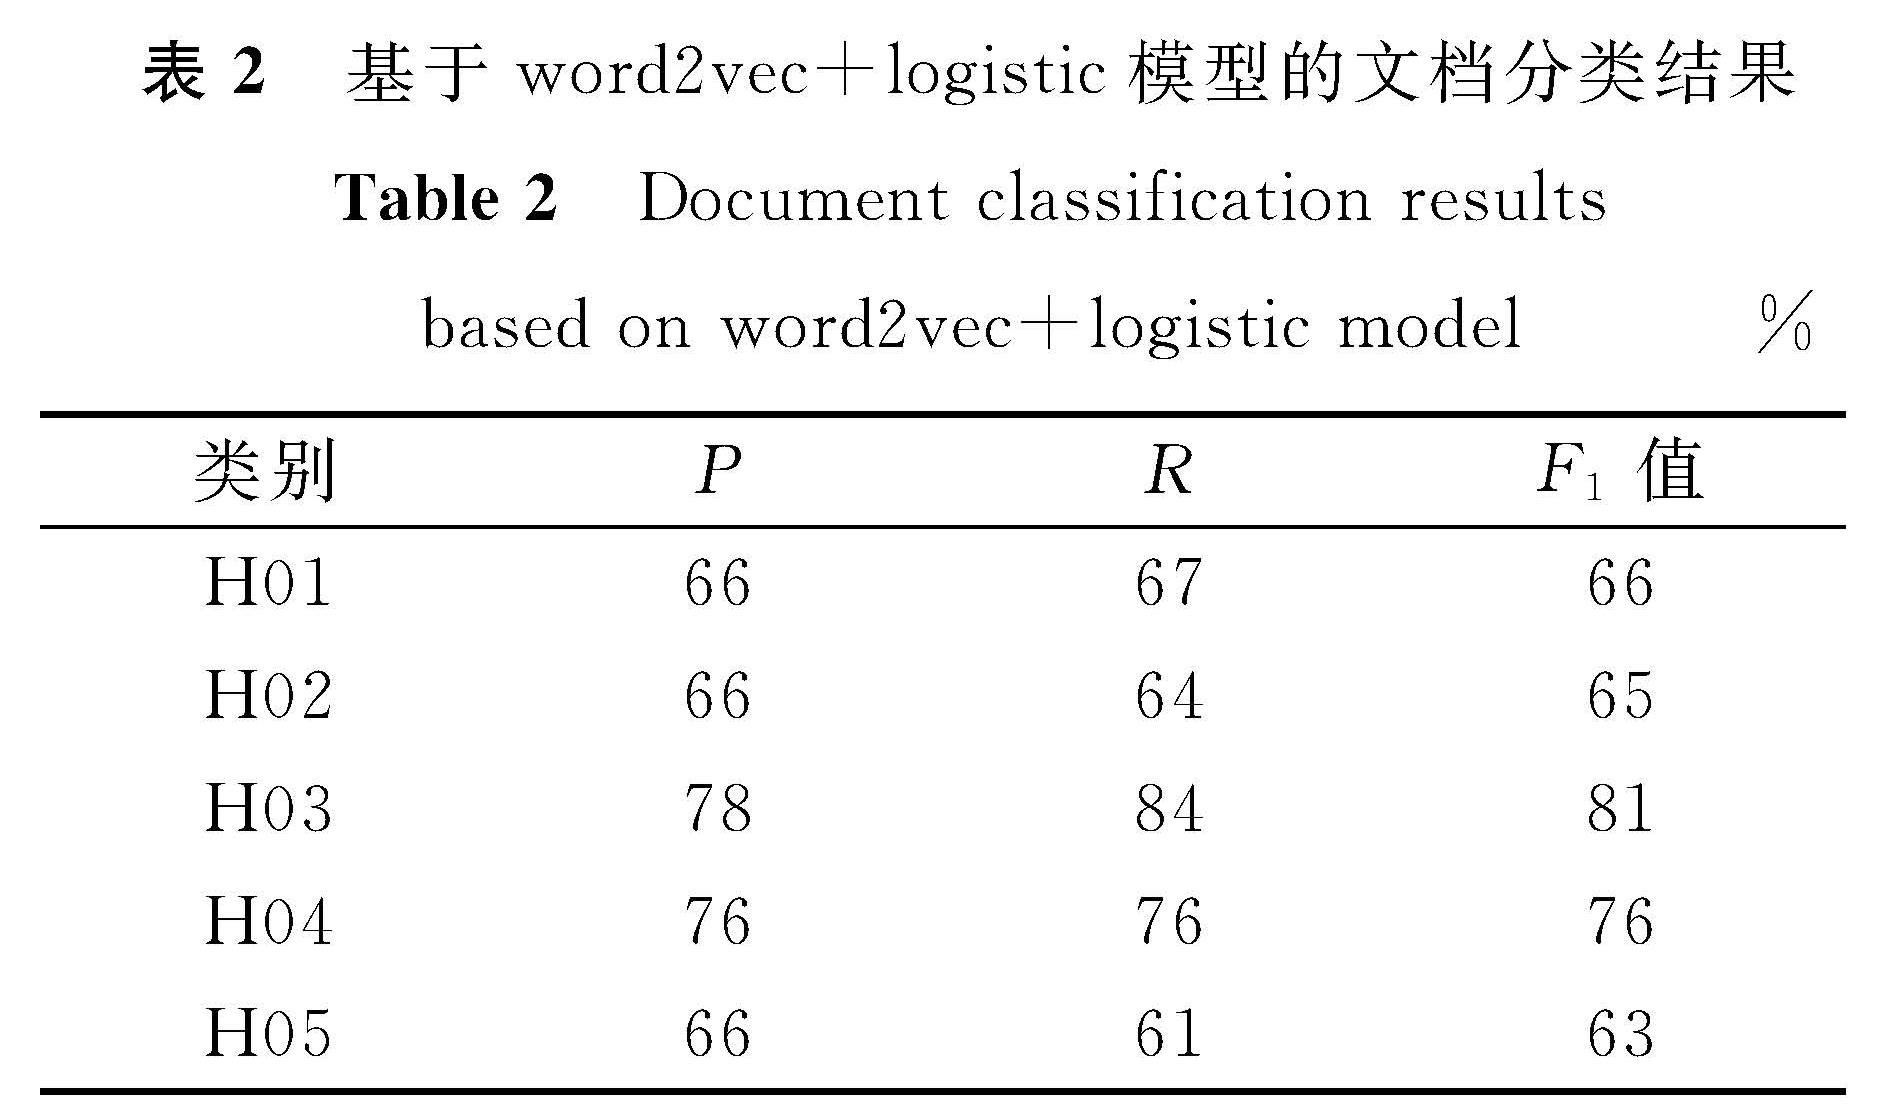 表2 基于word2vec+logistic模型的文档分类结果<br/>Table 2 Document classification results based on word2vec+logistic model%